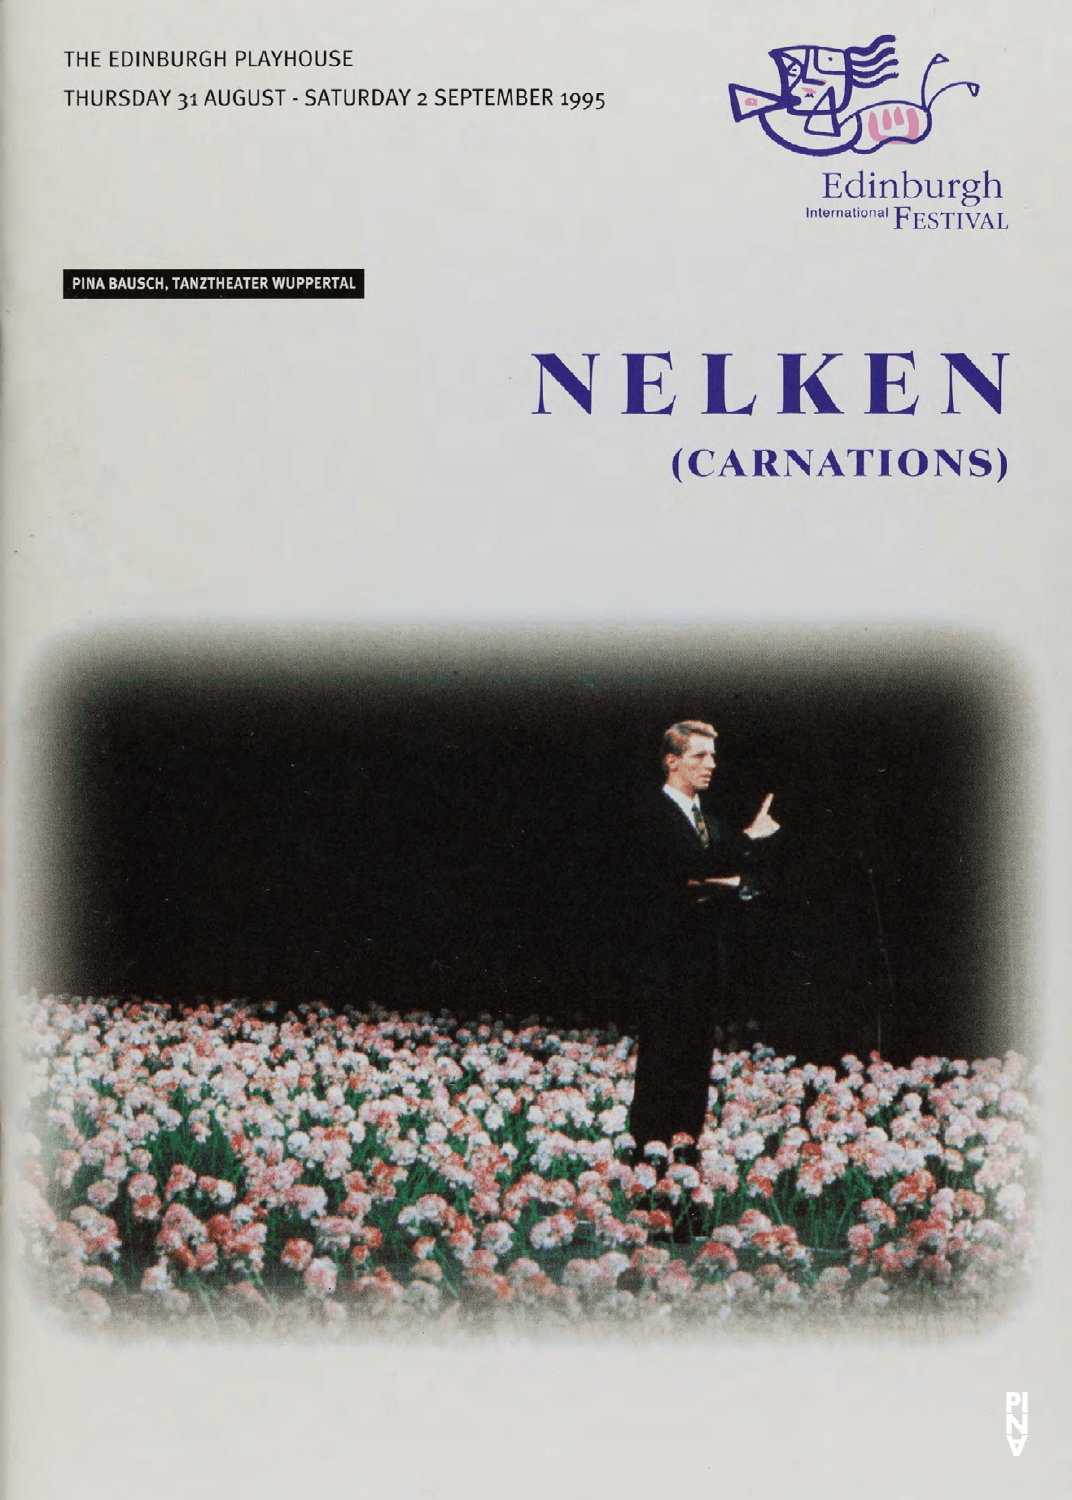 Programmheft zu „Nelken“ von Pina Bausch mit Tanztheater Wuppertal in Edinburgh, 31.08.1995–02.09.1995